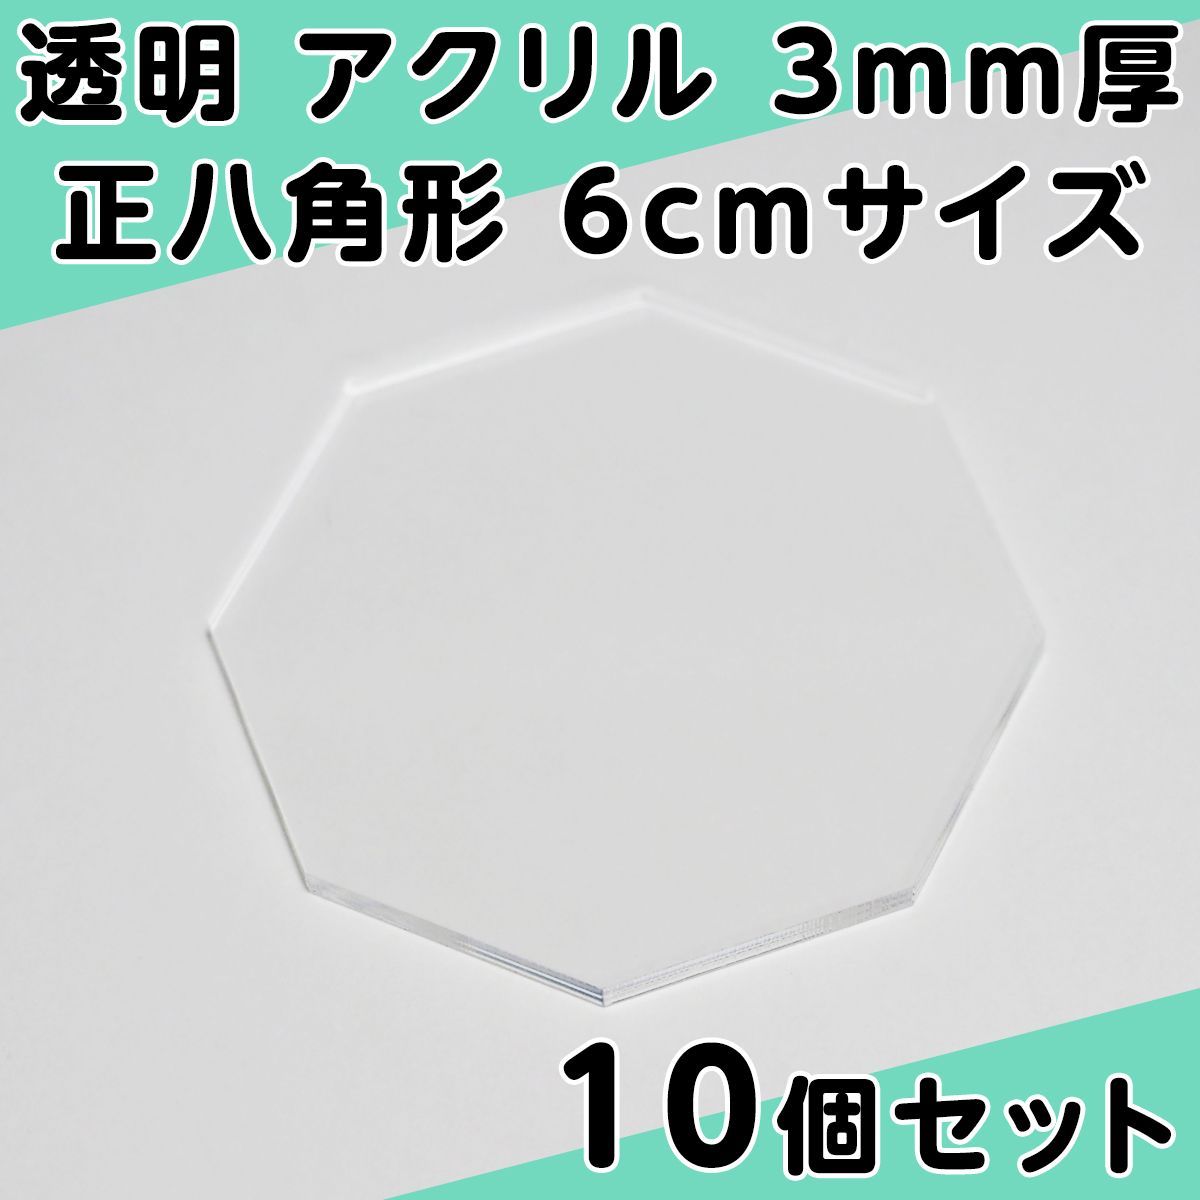 透明 アクリル 5mm厚 正五角形 6cmサイズ 10個セット